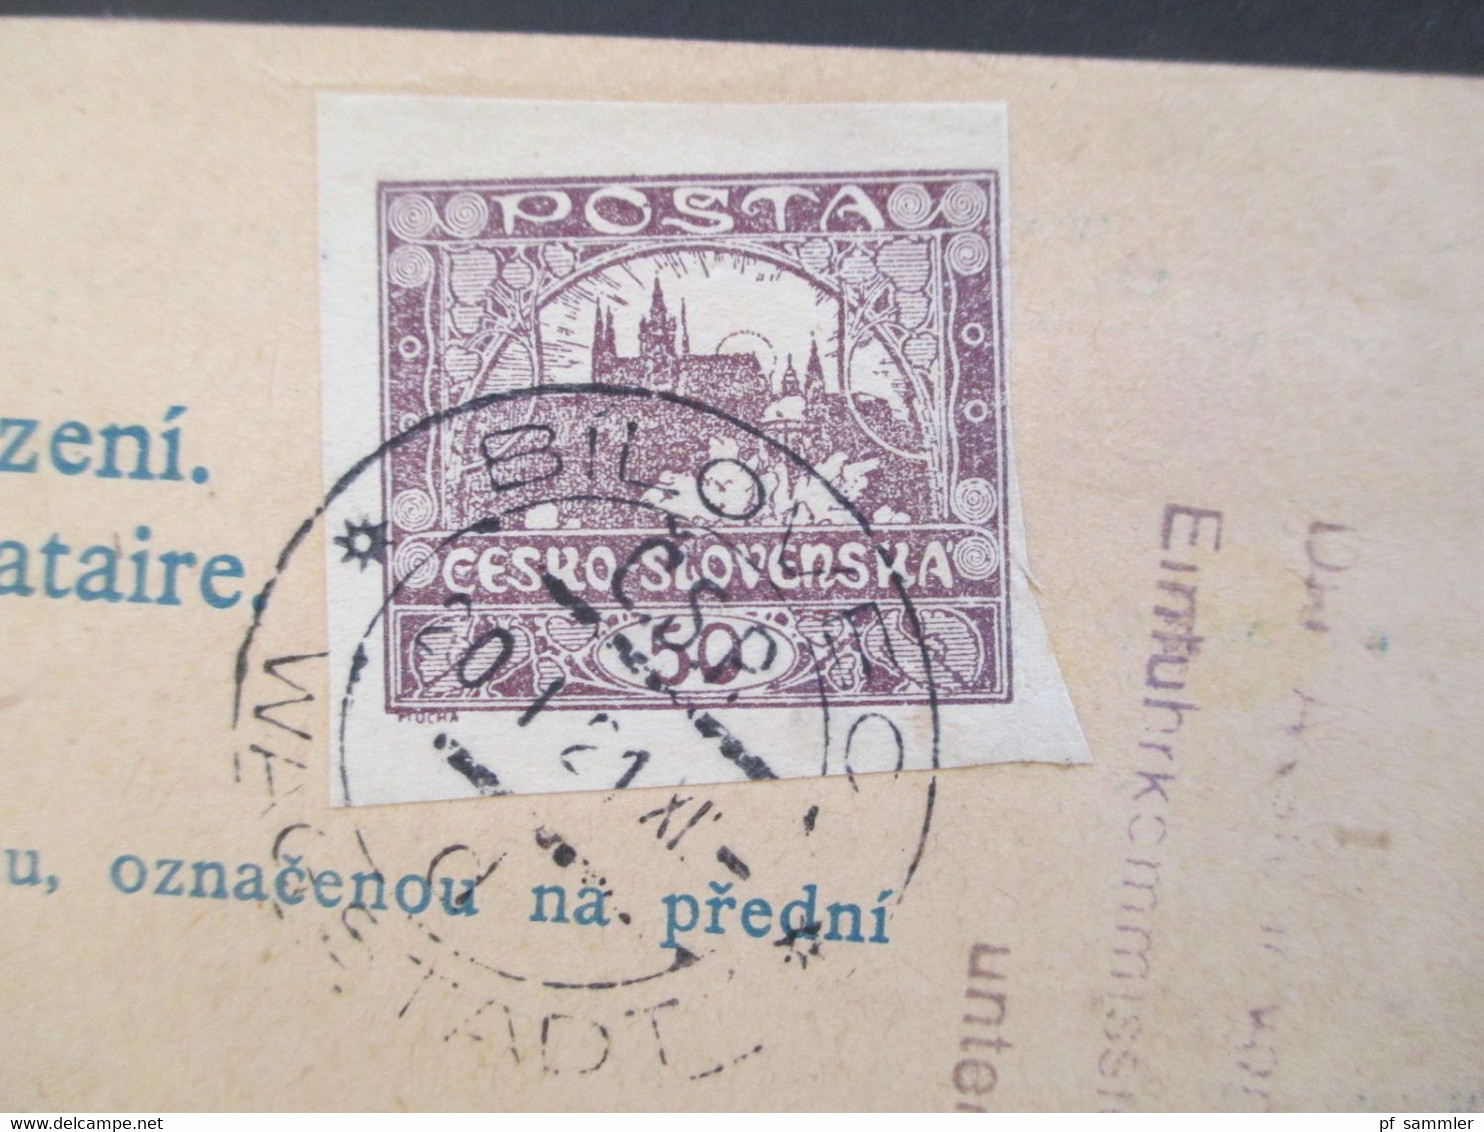 CSSR 1921 Hradschin Mucha 3er Streifen Paketkarte Wagstadt Sudetenland mit Steuermarke und vielen Stempeln